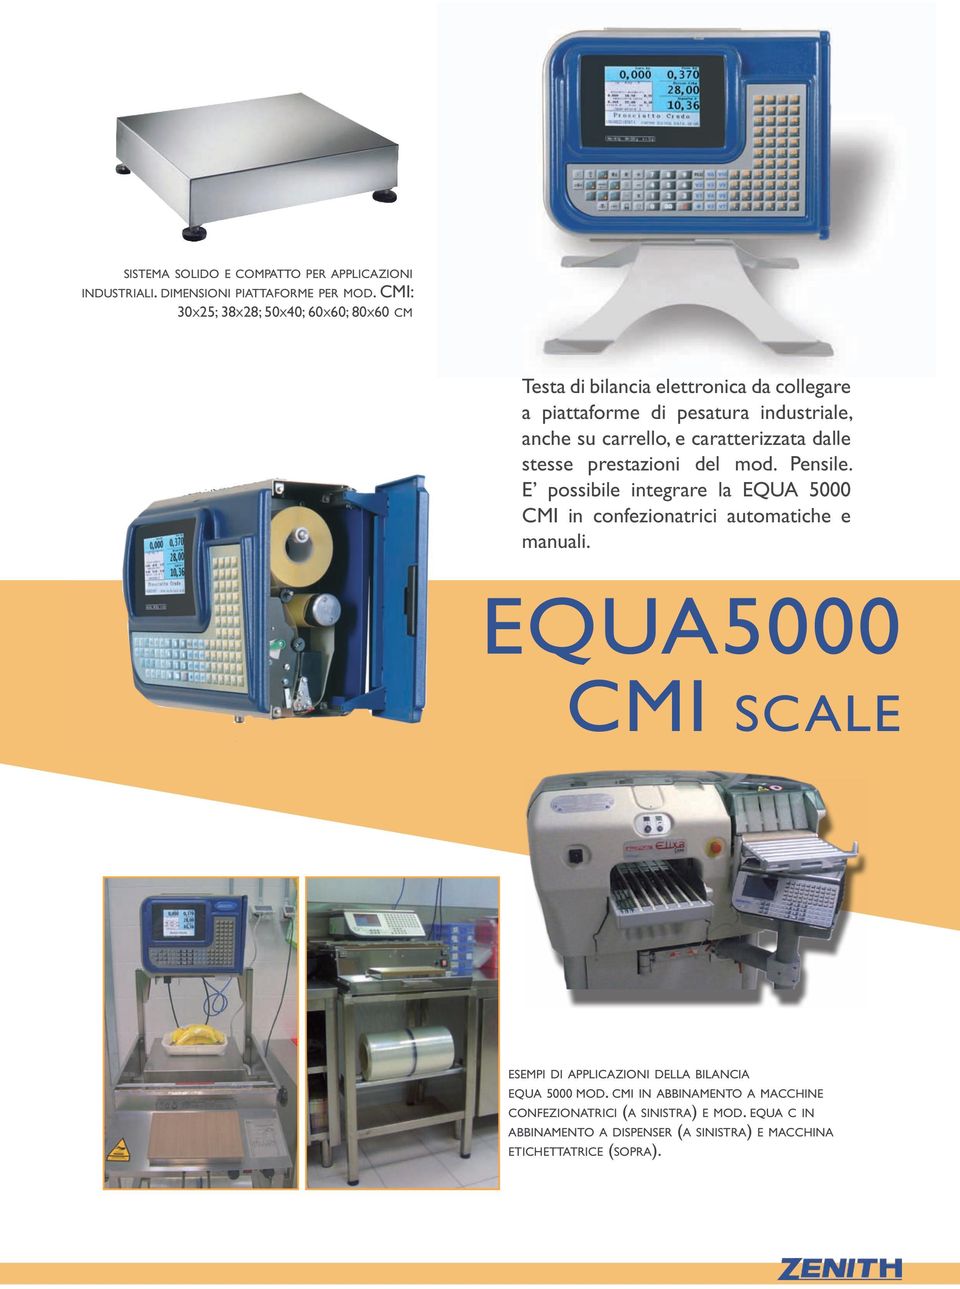 caratterizzata dalle stesse prestazioni del mod. Pensile. E possibile integrare la EQUA 5000 CMI in confezionatrici automatiche e manuali.